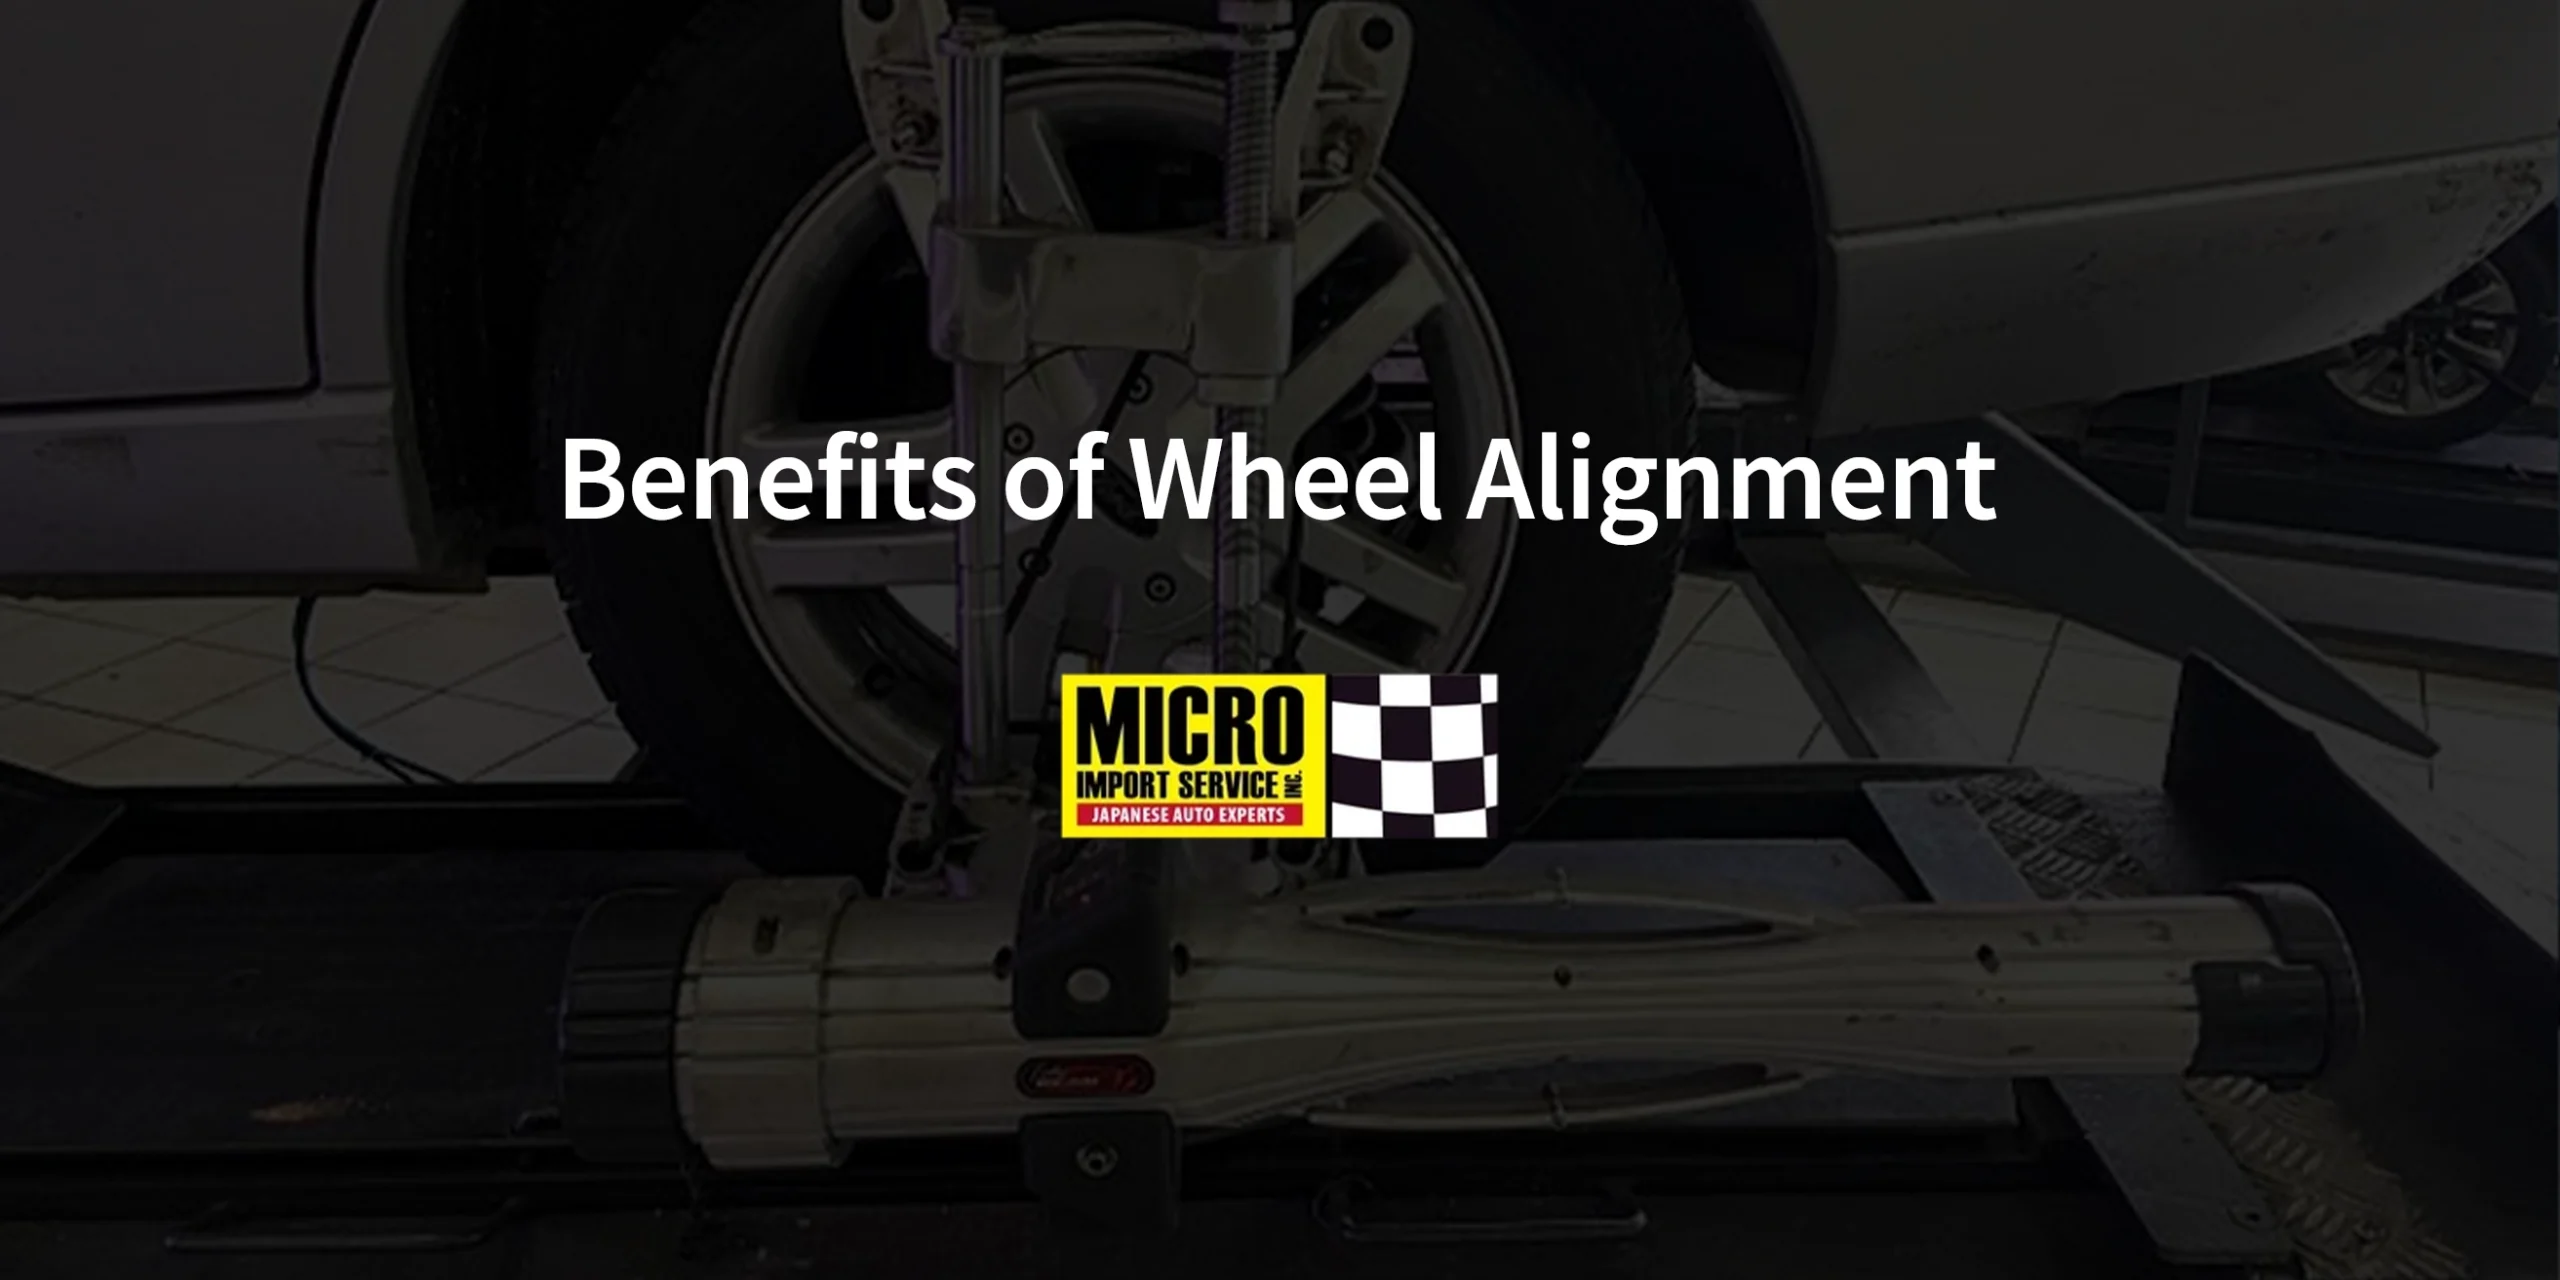 Benefits of Wheel Alignment